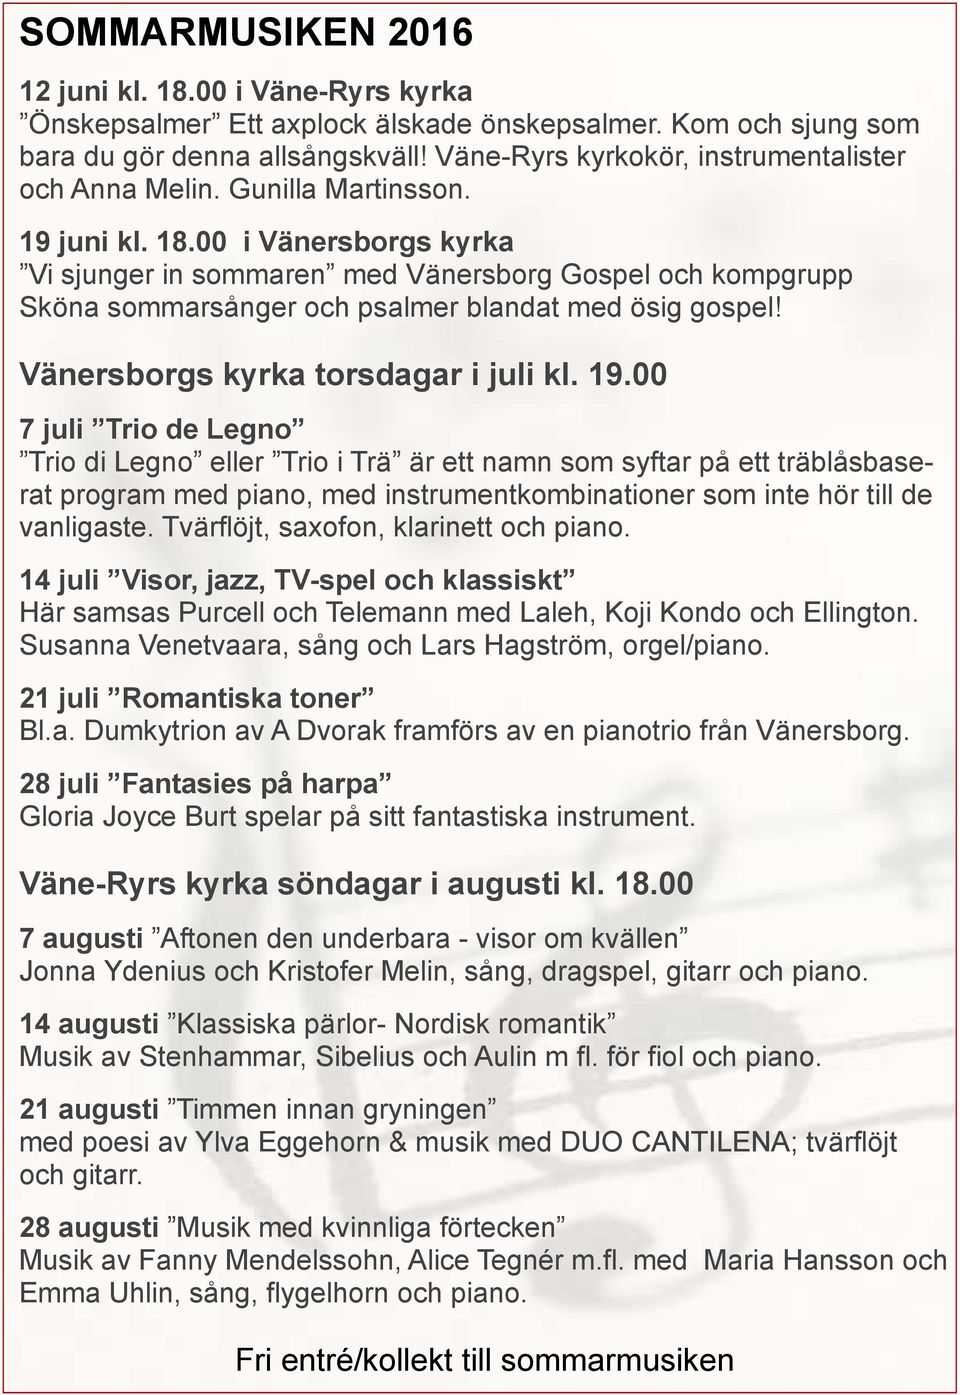 00 i Vi sjunger in sommaren med Vänersborg Gospel och kompgrupp Sköna sommarsånger och psalmer blandat med ösig gospel! torsdagar i juli kl. 19.